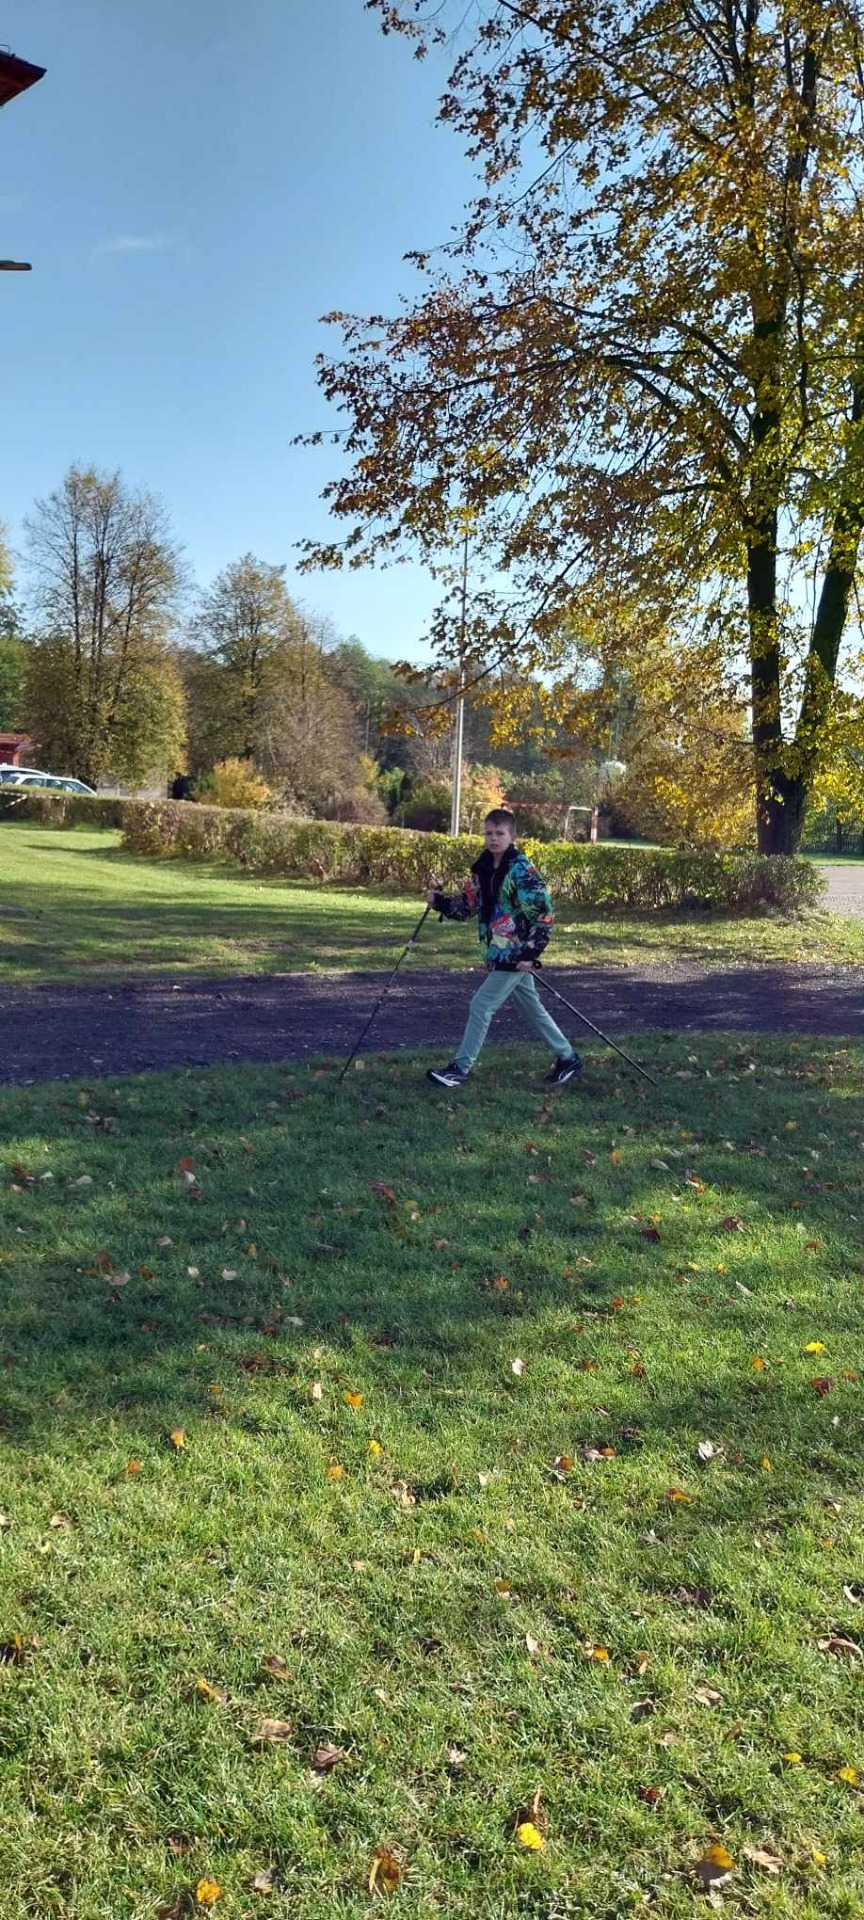 Uczniowie uprawiają nordic walking na szkolnym boisku